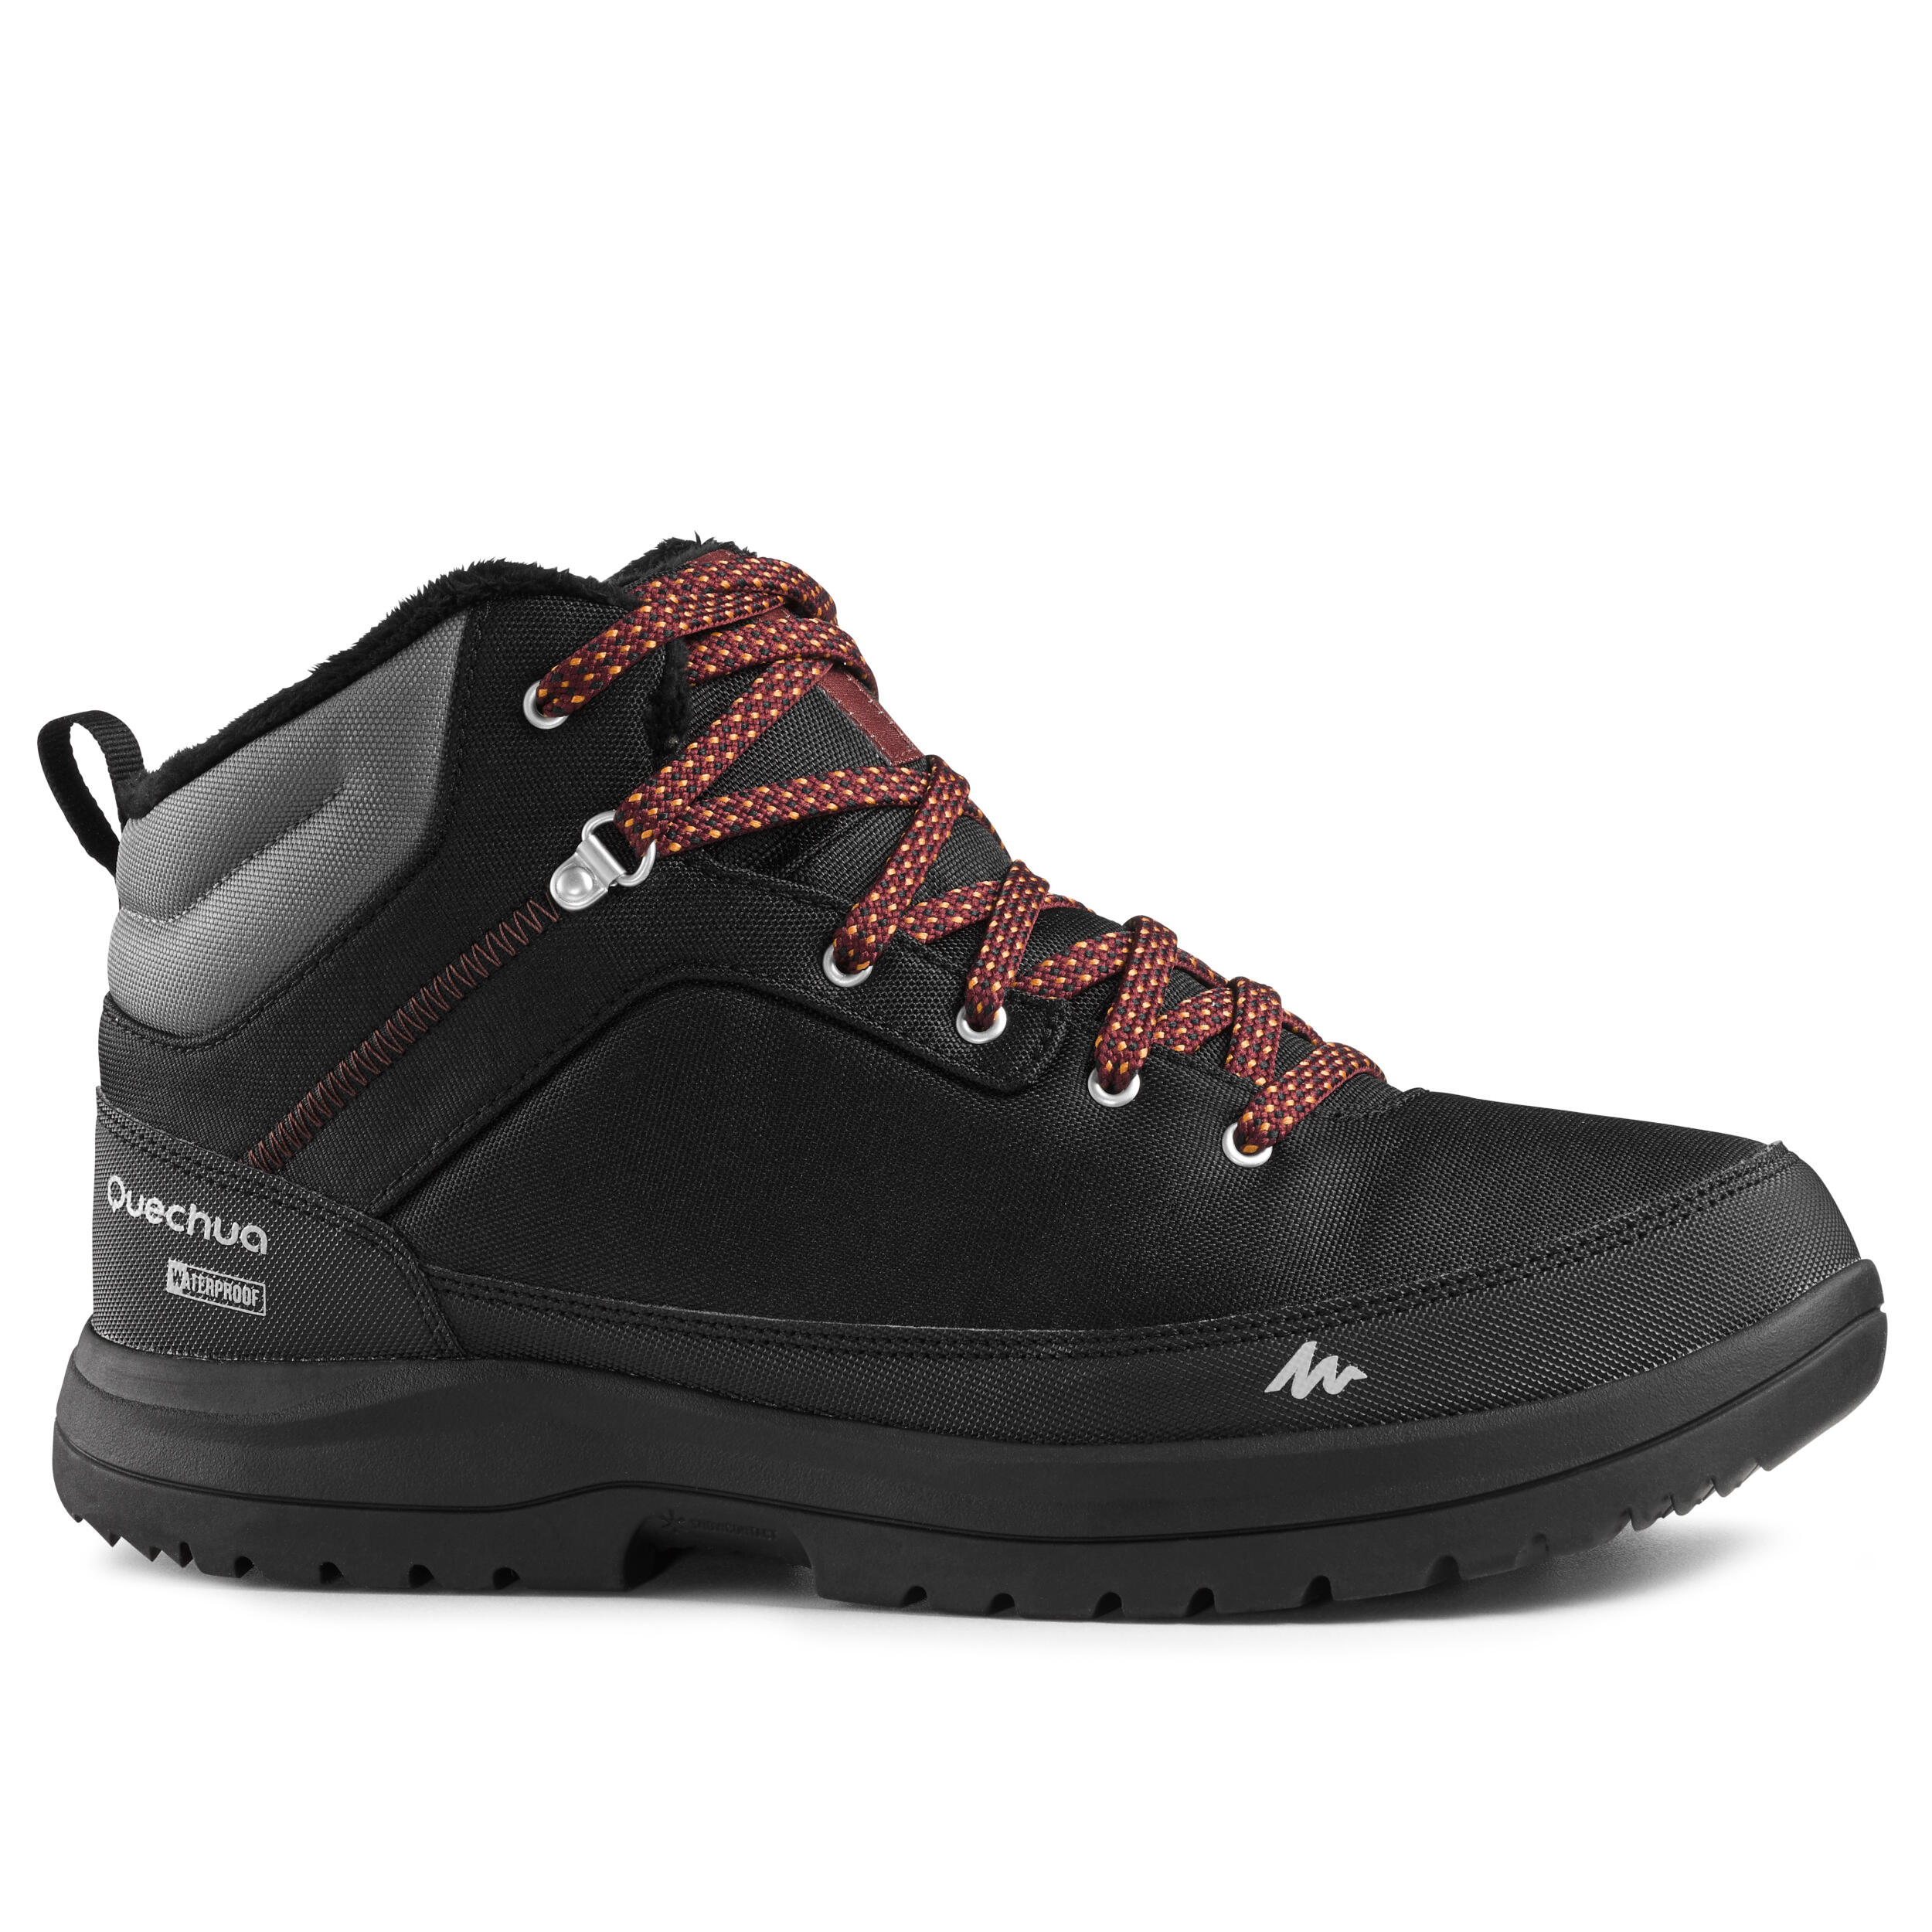 quechua waterproof boots